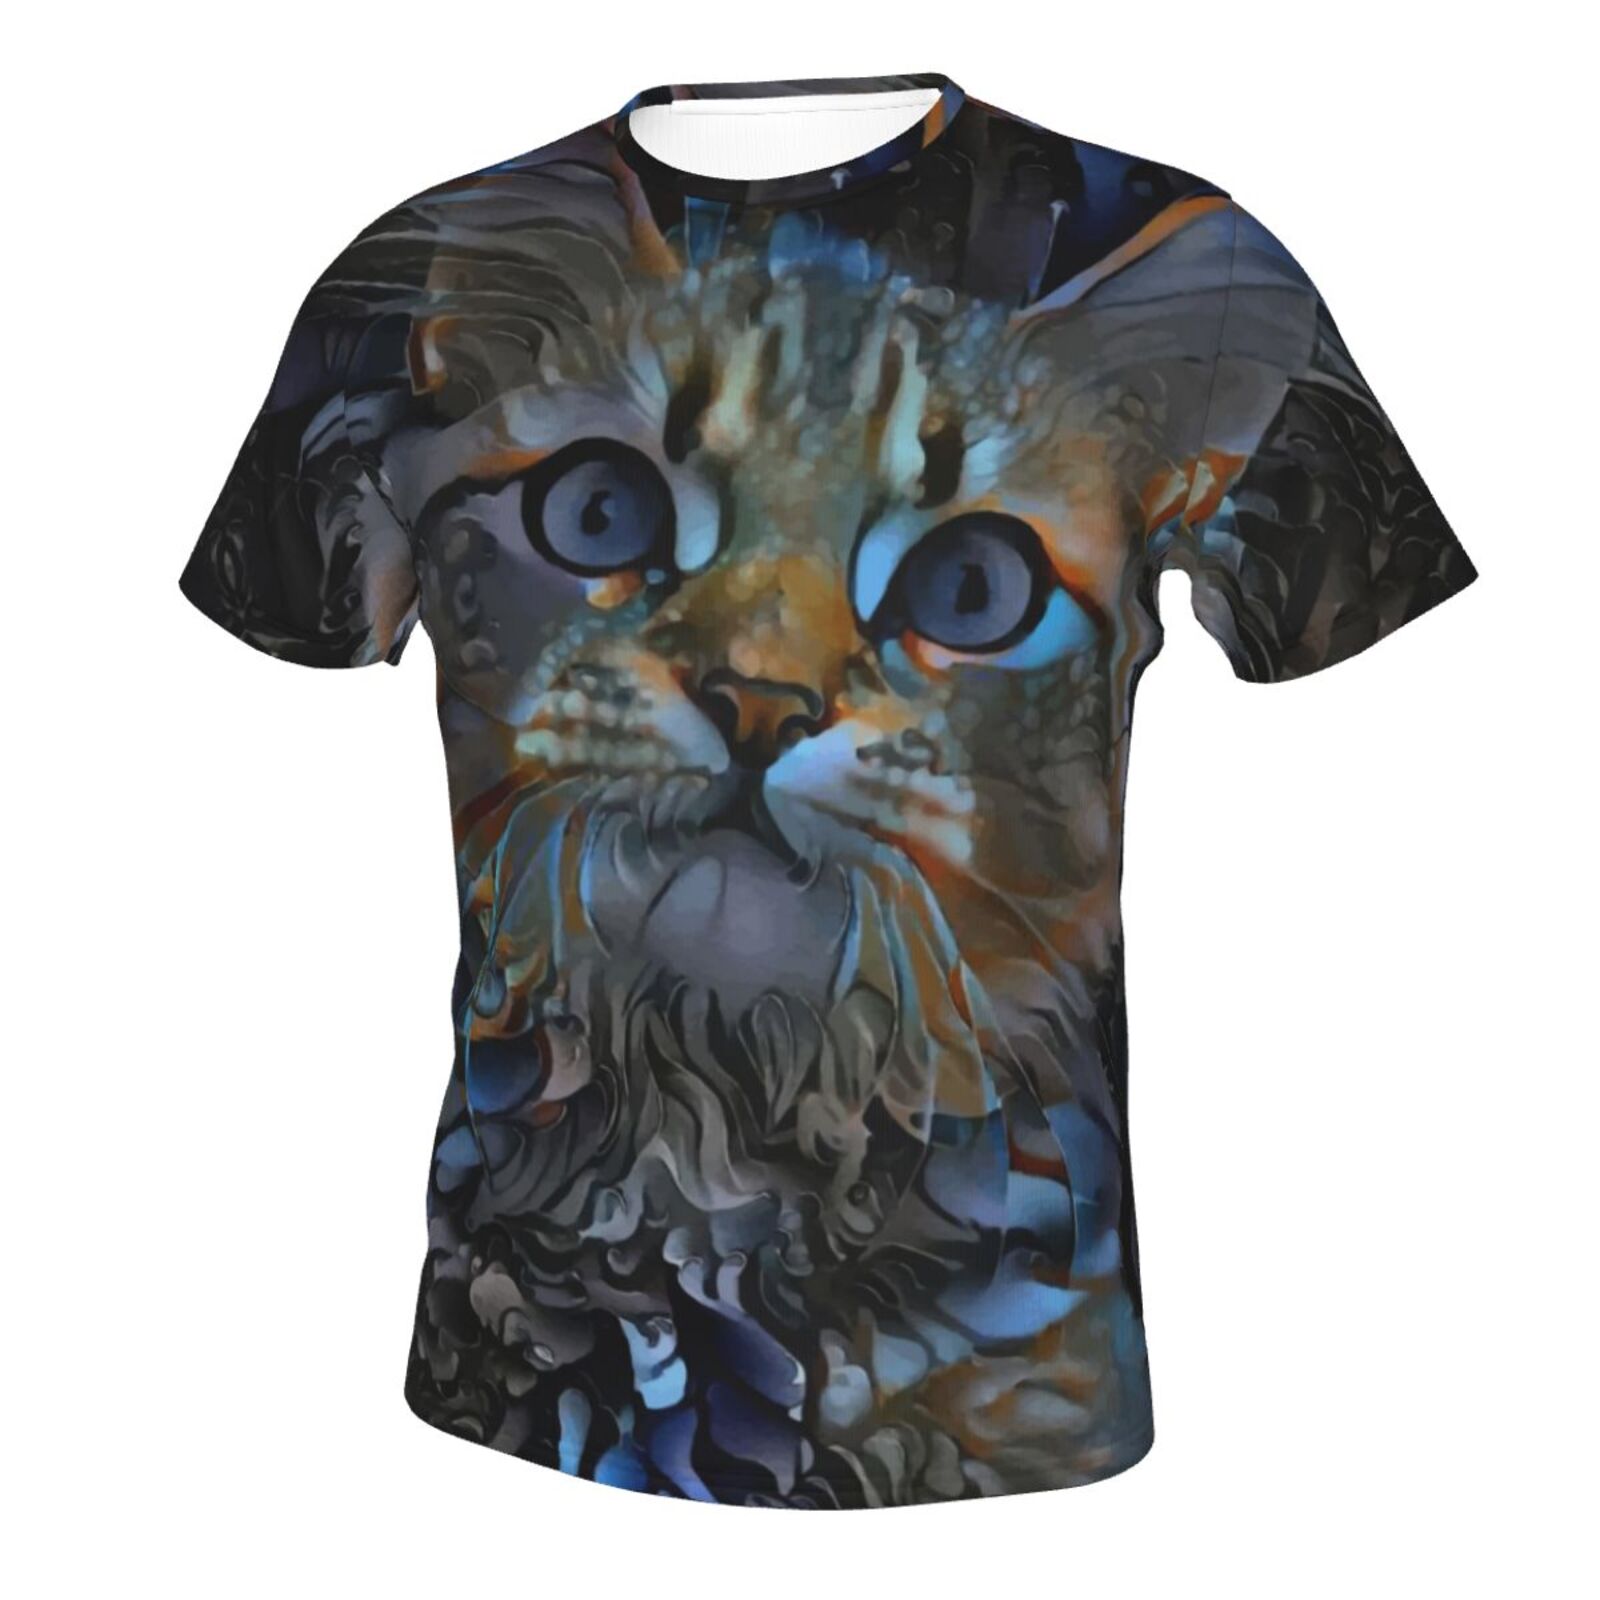 Leyris Katze Medien Mischen Elemente Klassisch T Shirt